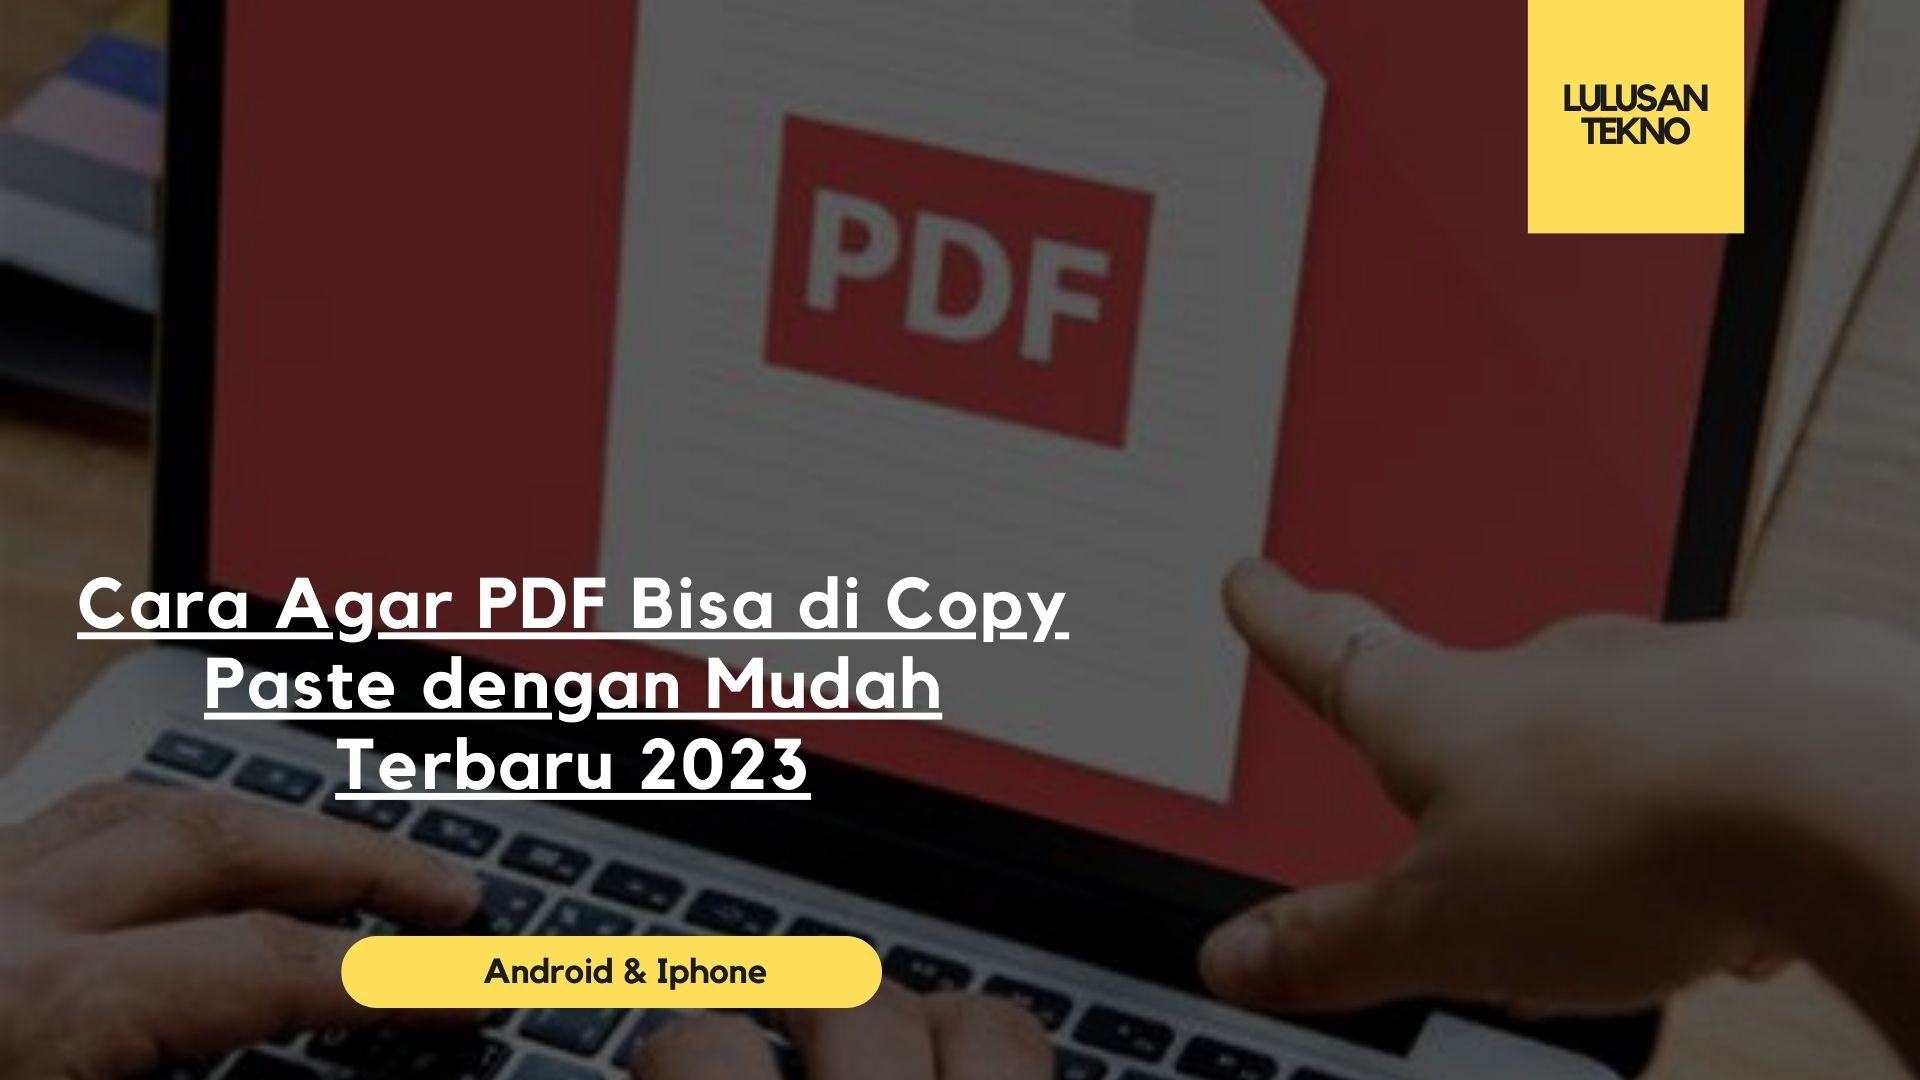 Cara Agar PDF Bisa di Copy Paste dengan Mudah Terbaru 2023